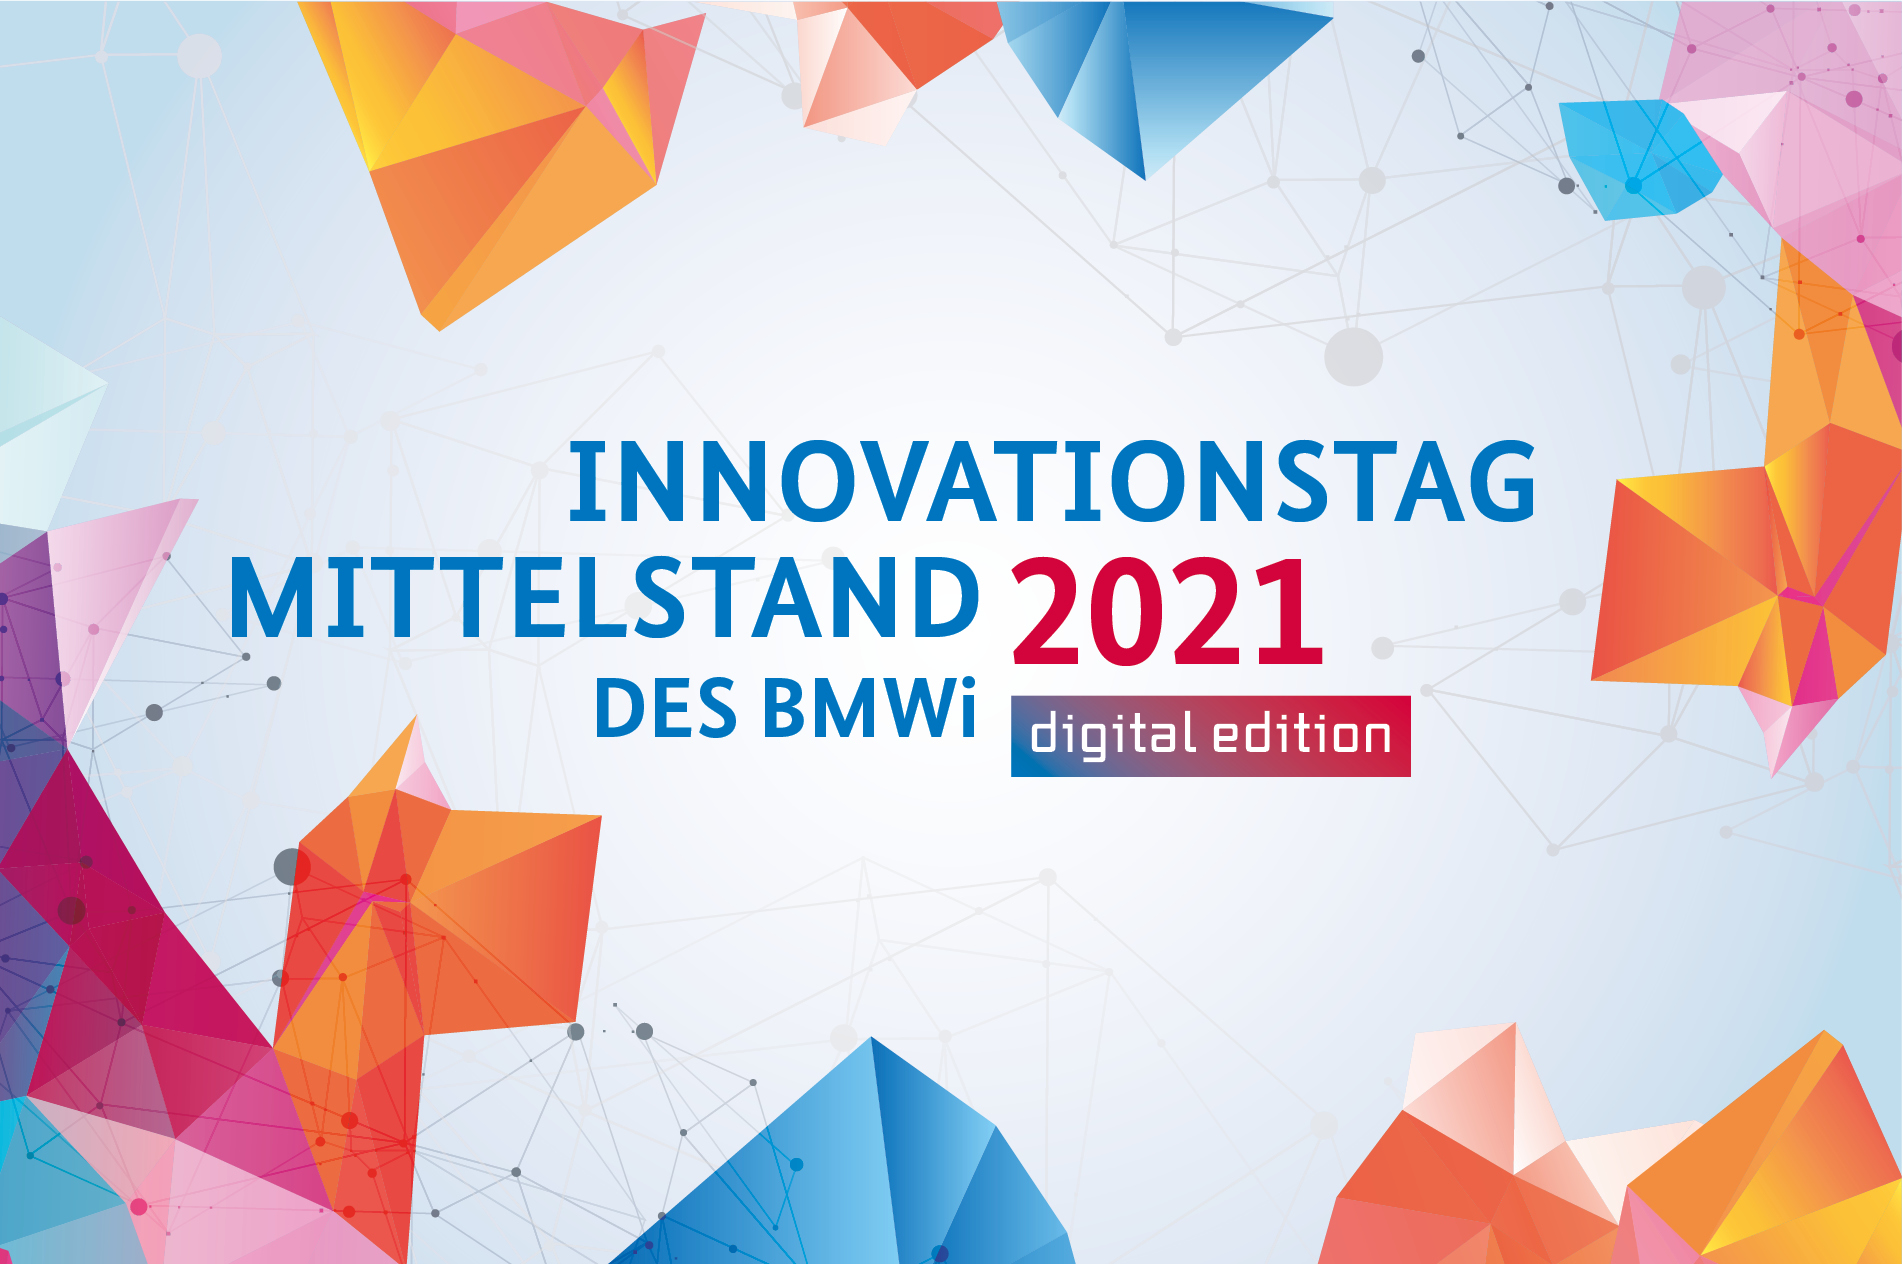 Innovationstag Mittelstand des BMWi 2021